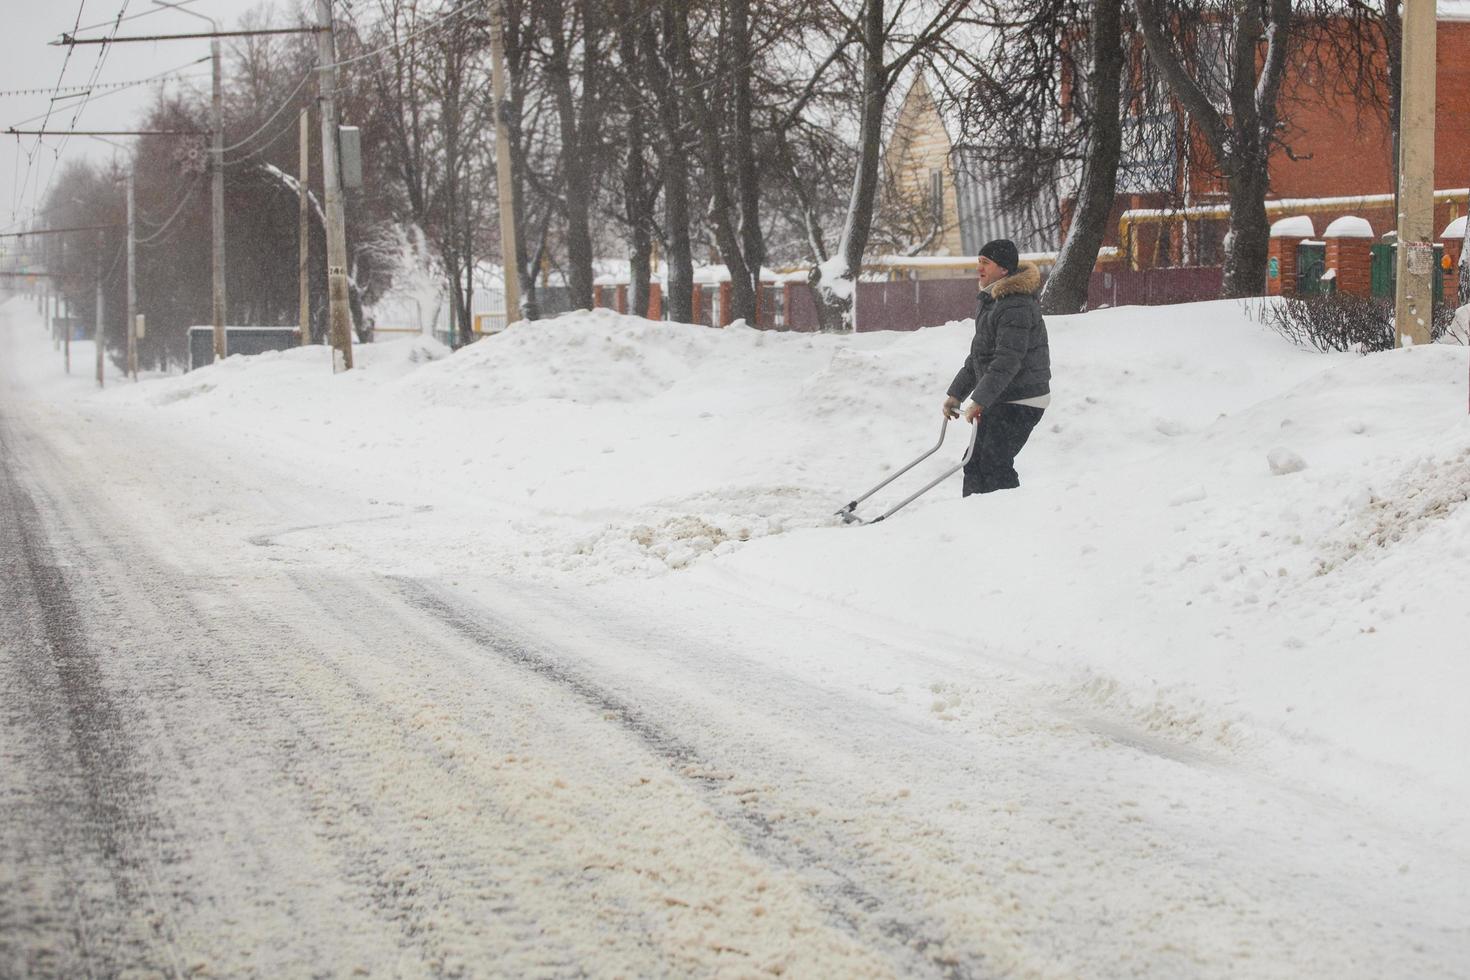 tula, rusia 13 de febrero de 2020 hombre limpiando la calzada con raspador de nieve en la mañana de invierno después de la tormenta de nieve. foto